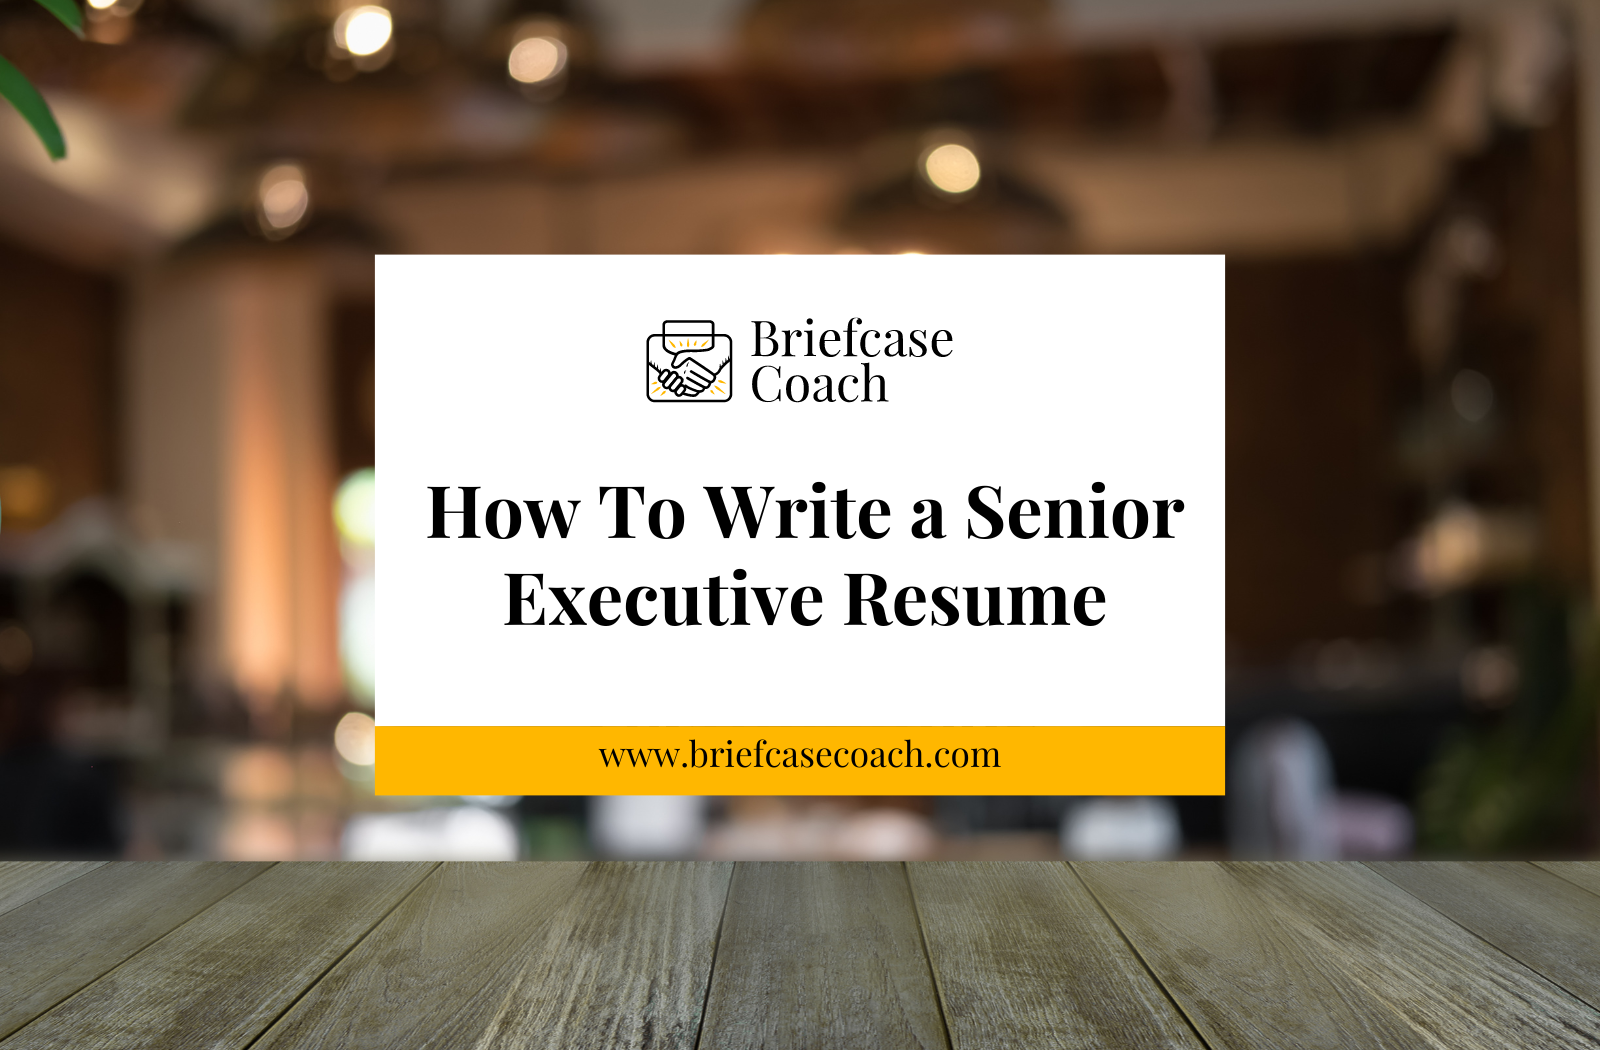 How To Write a Senior Executive Resume